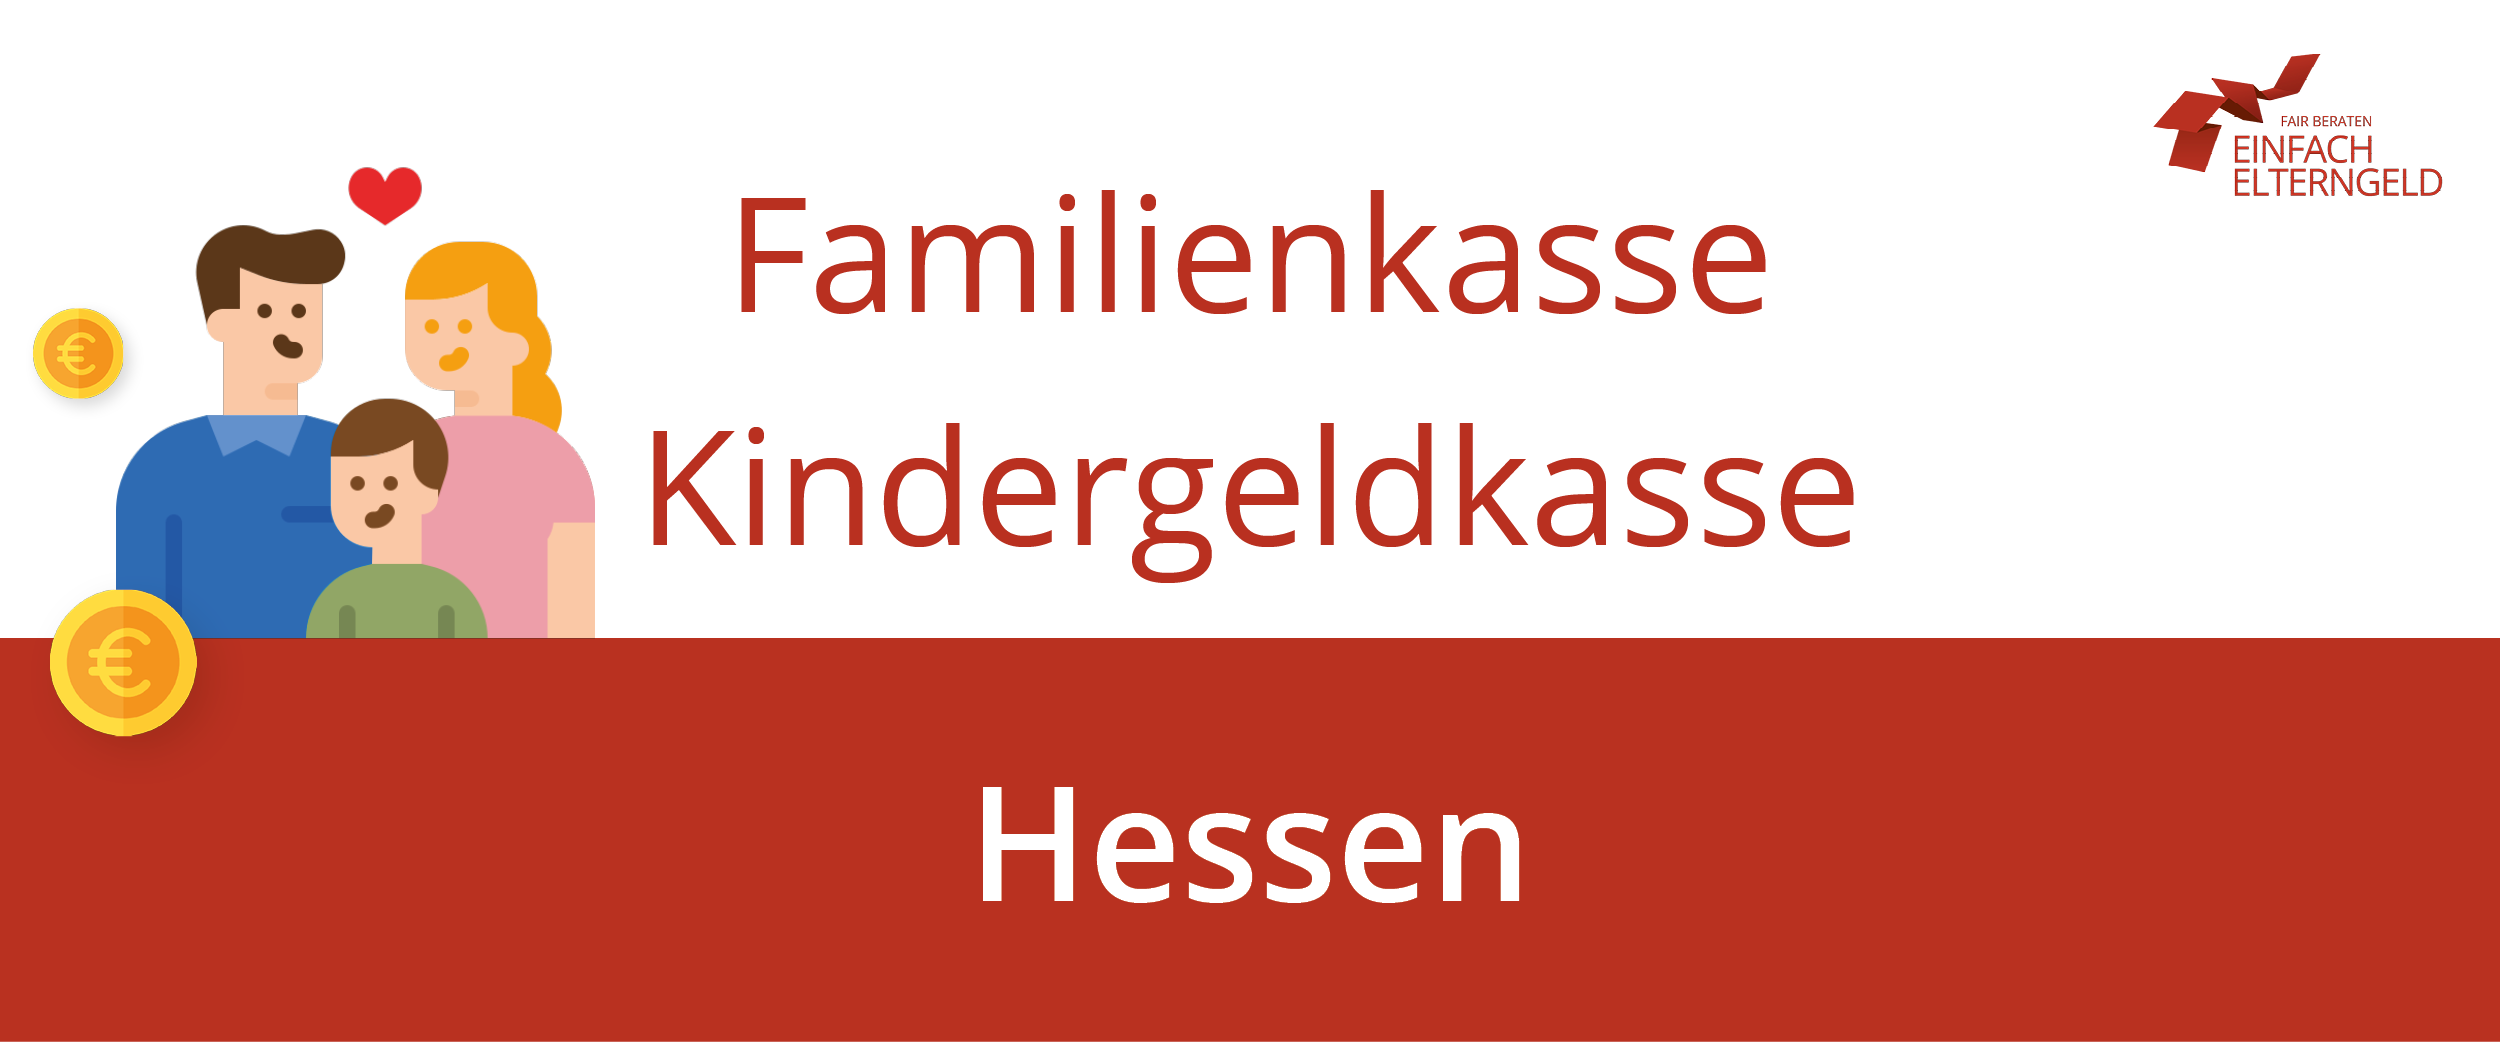 Die Familienkasse Hessen ist an diesen Standorten erreichbar.